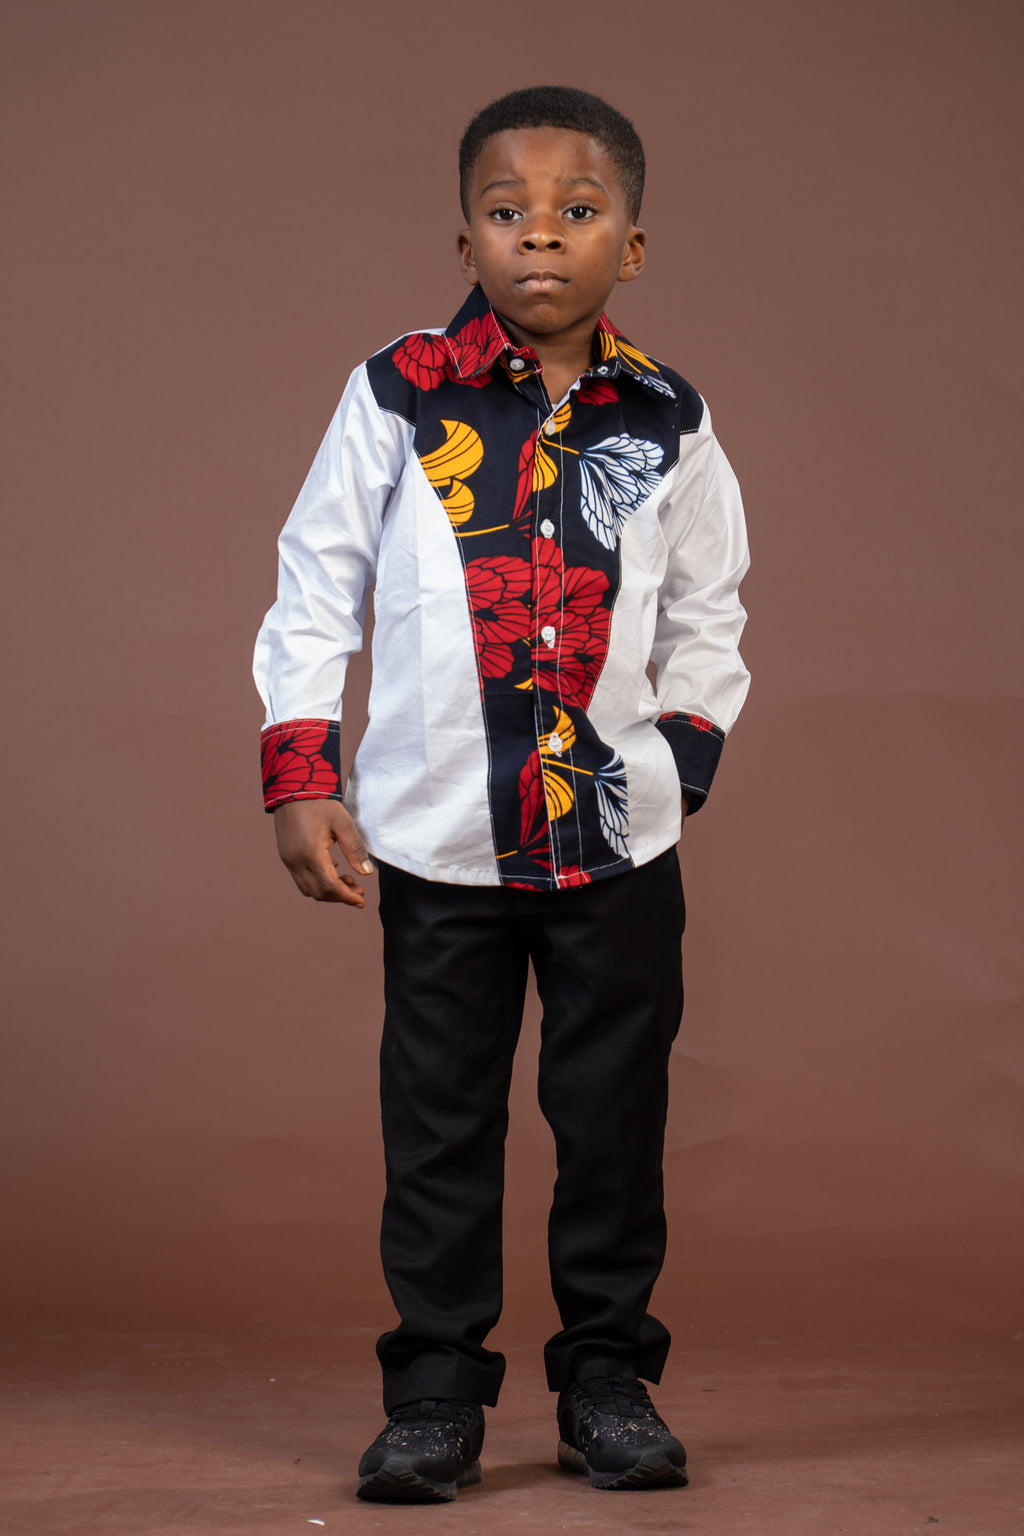 Trey Ankara Mixed Print Boy Shirt | White and African Ankara Print